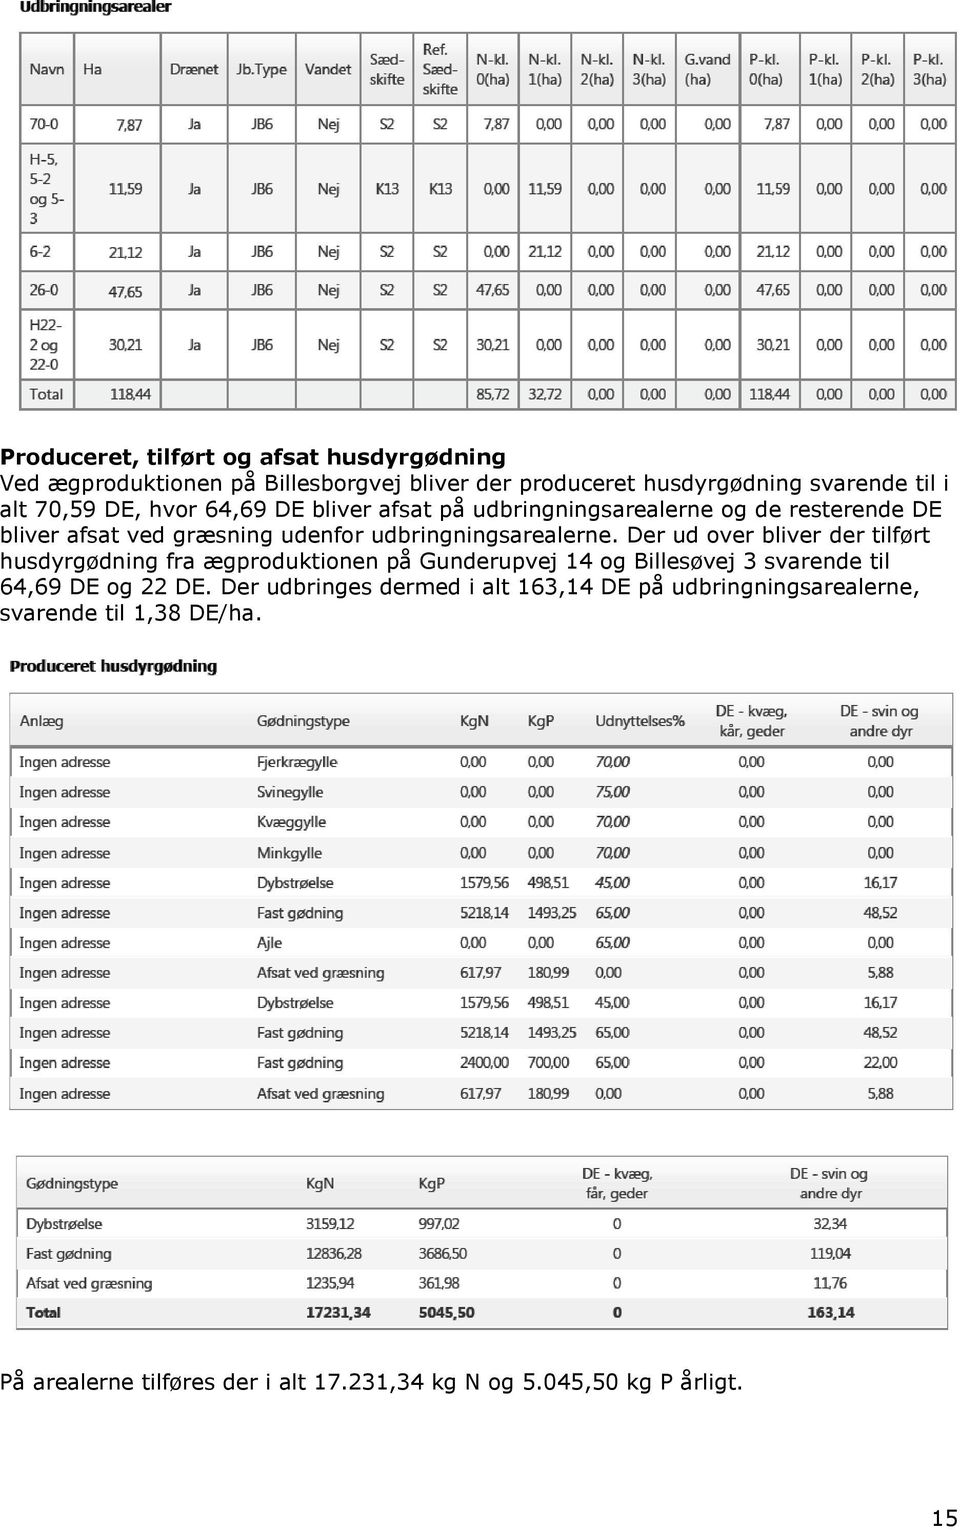 Der ud over bliver der tilført husdyrgødning fra ægproduktionen på Gunderupvej 14 og Billesøvej 3 svarende til 64,69 DE og 22 DE.